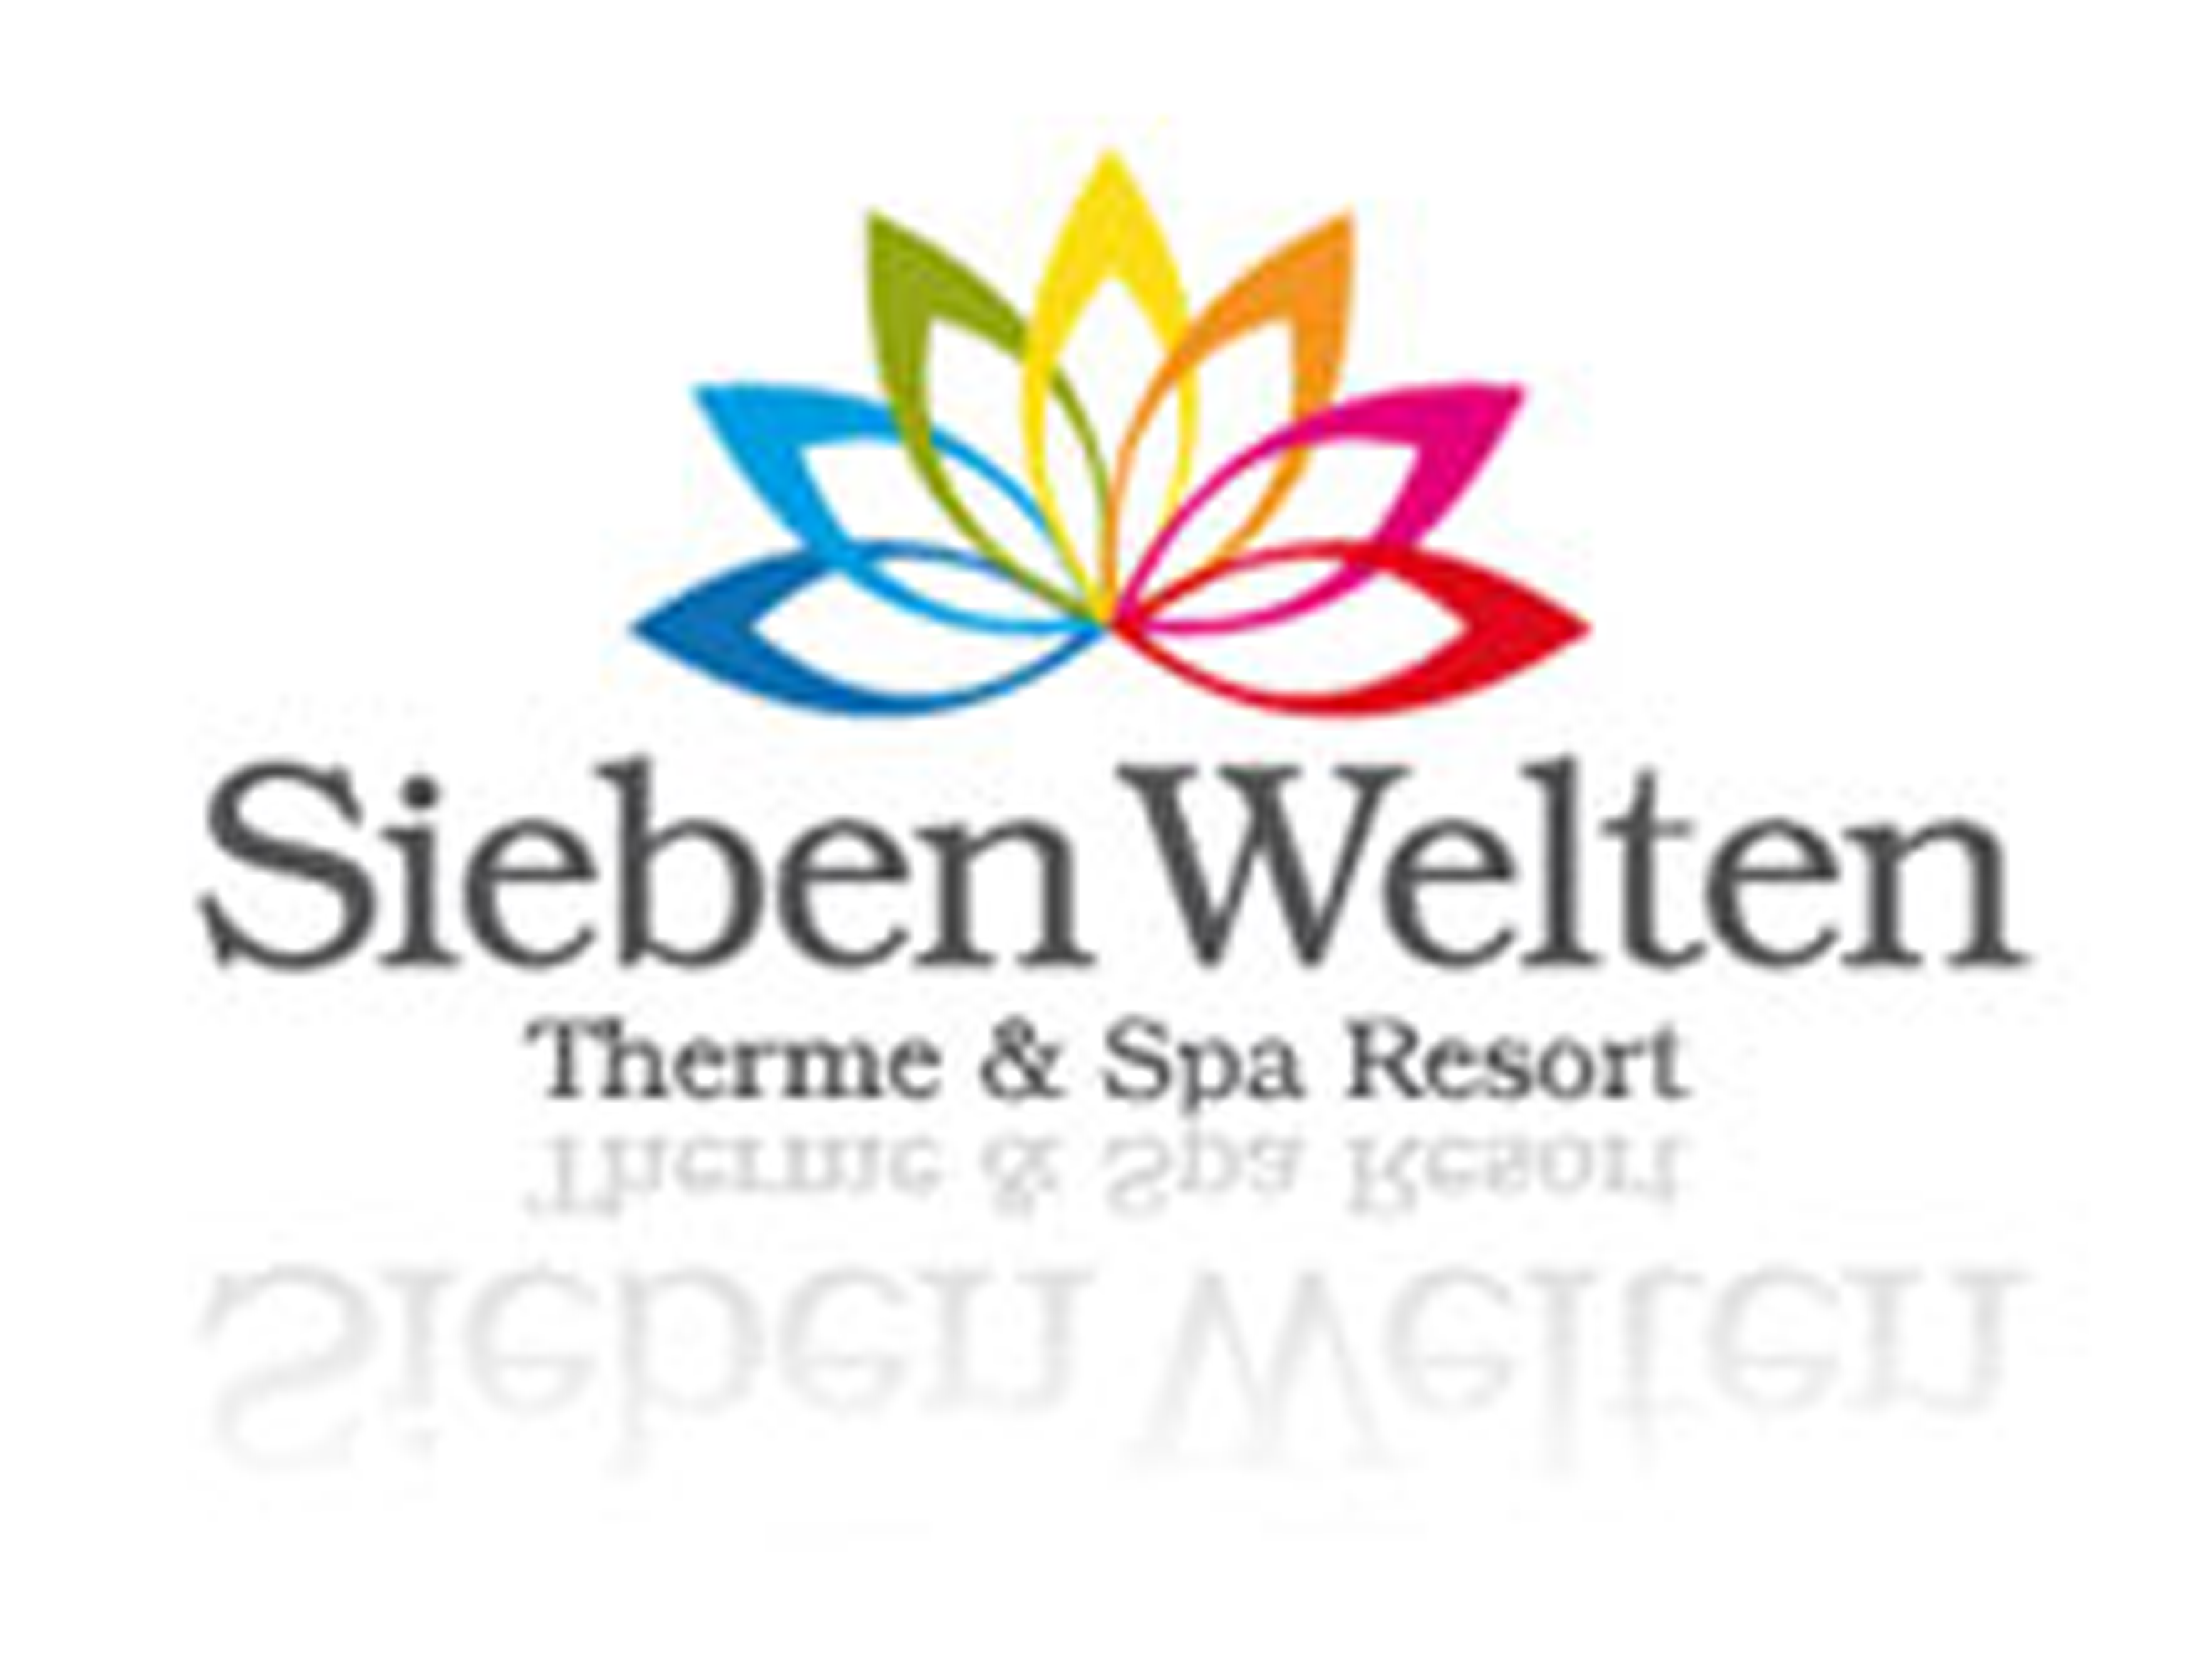 Sieben Welten Therme & Spa Resort